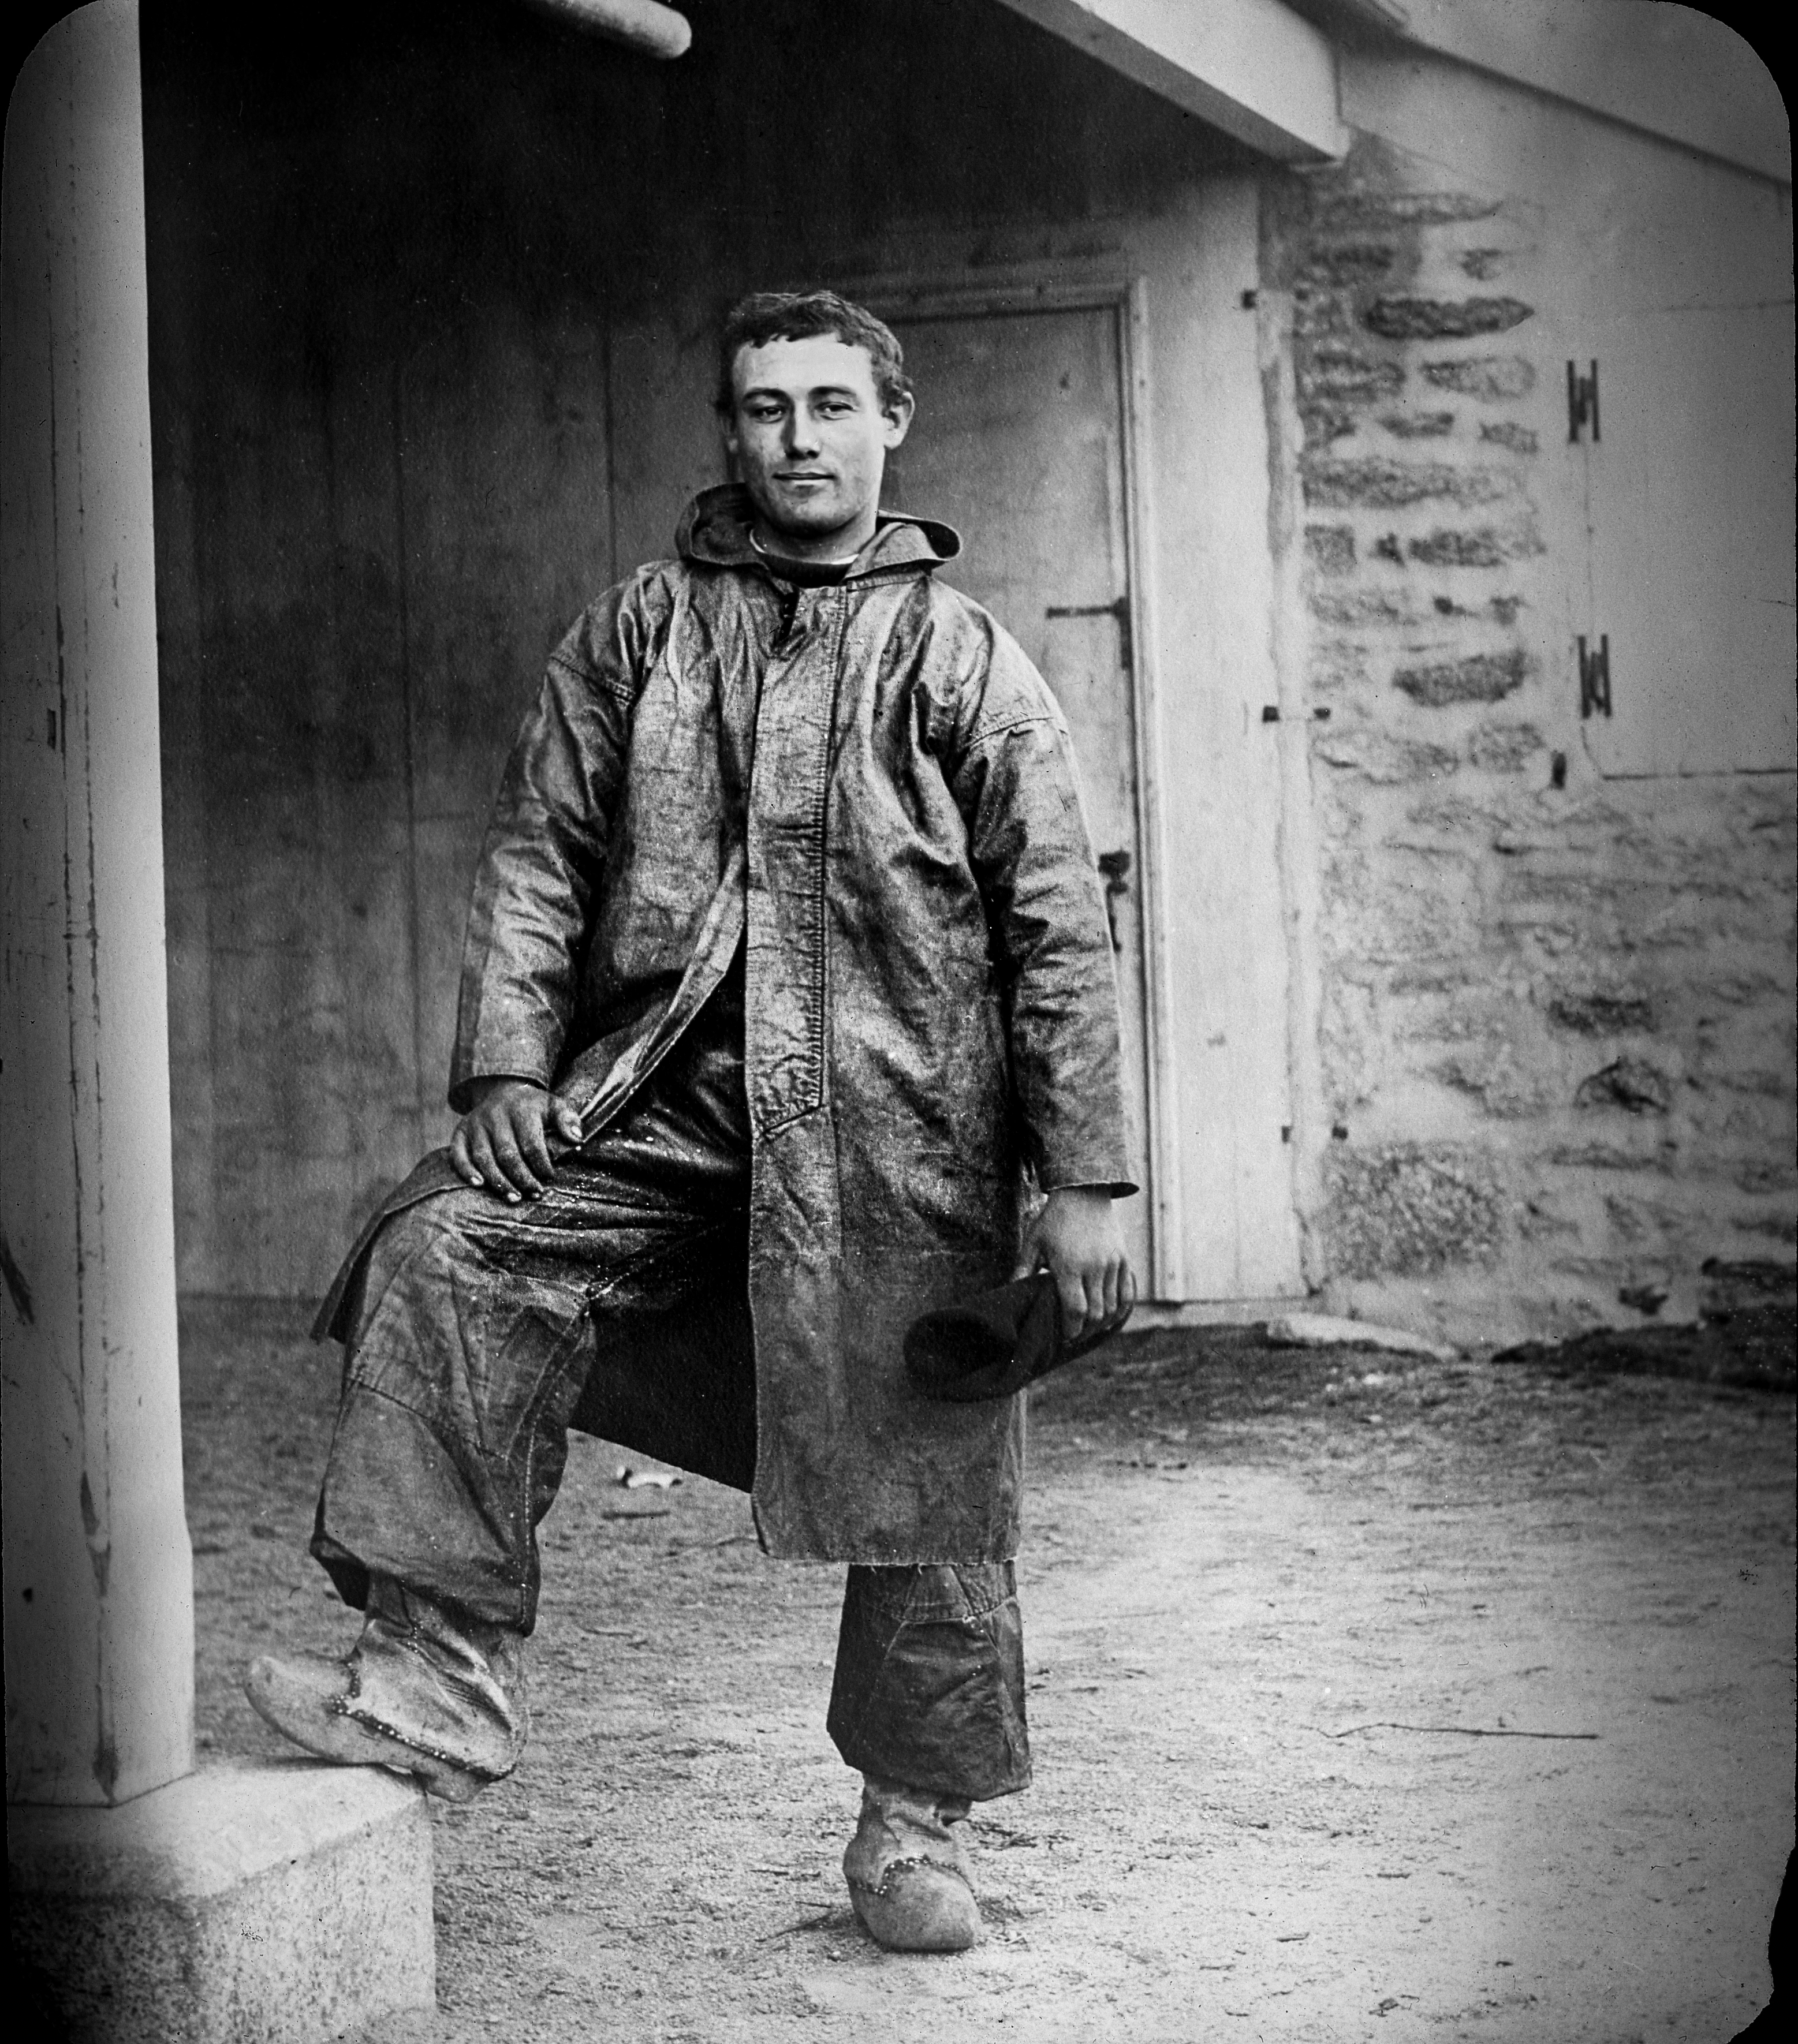 François Folgoas, champion of the ‘getting dressed’ race. Le Guilvinec, 1903. Photo by Jacques de Thézac. Source: Musée départemental breton. Inventory Number: 990754 